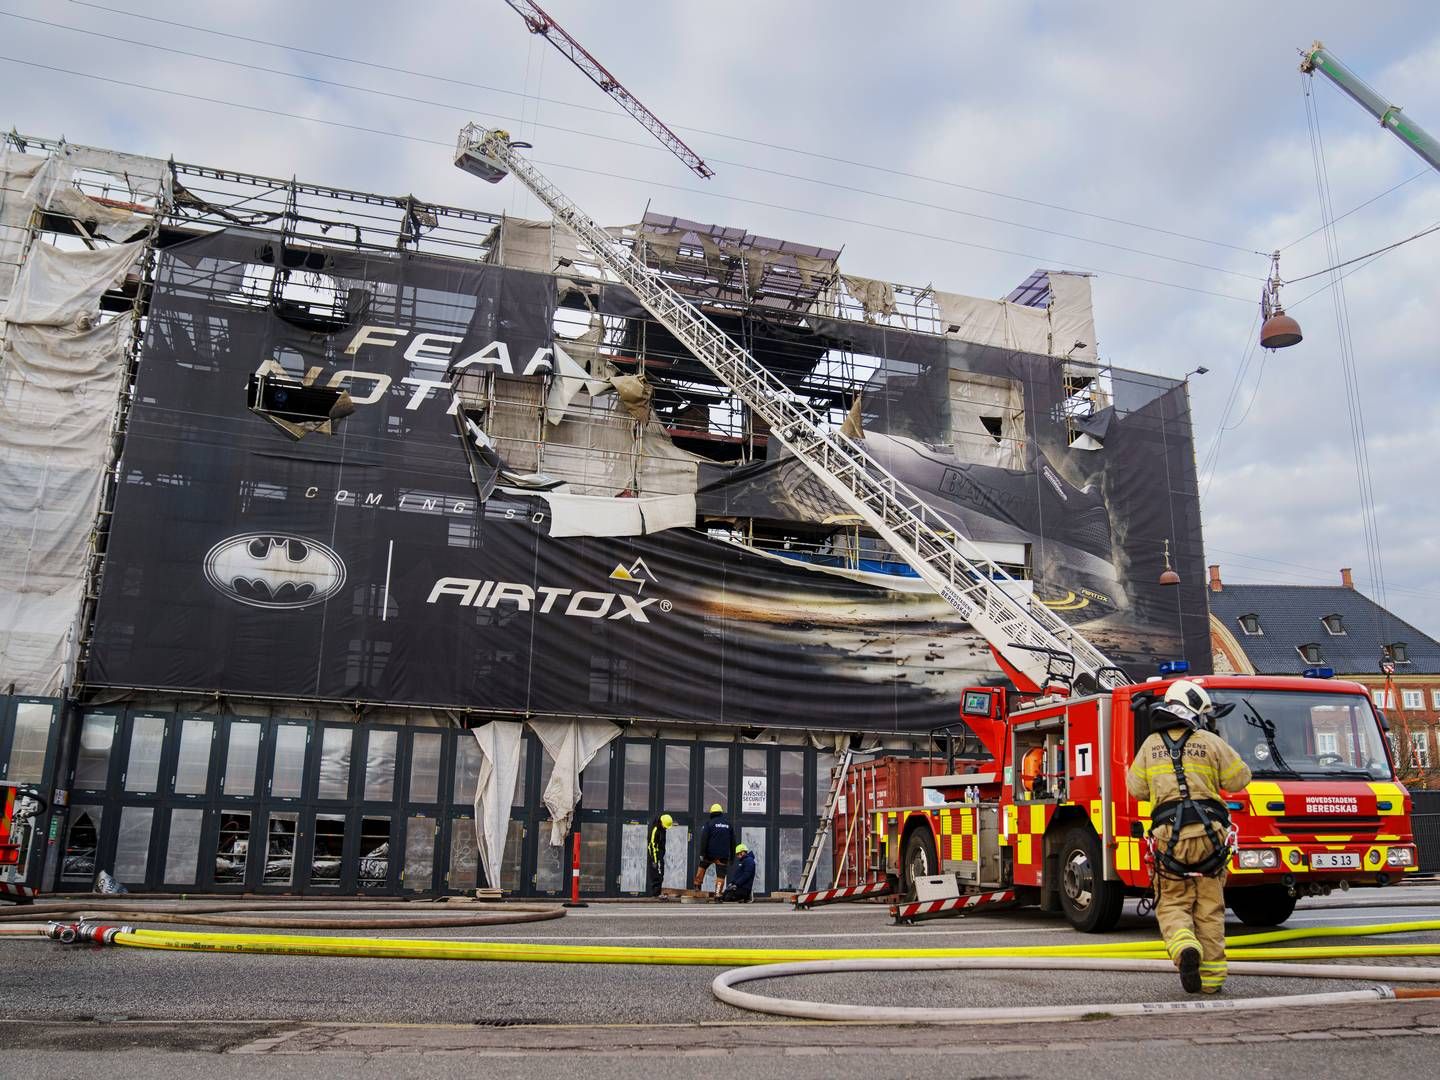 Airtox-direktør Henrik Wiingaard-Madsen har sagt til Ekstra Bladet, "at det er rigtig træls," at reklamen bliver set i forbindelse med en tragisk ulykke. | Foto: Liselotte Sabroe